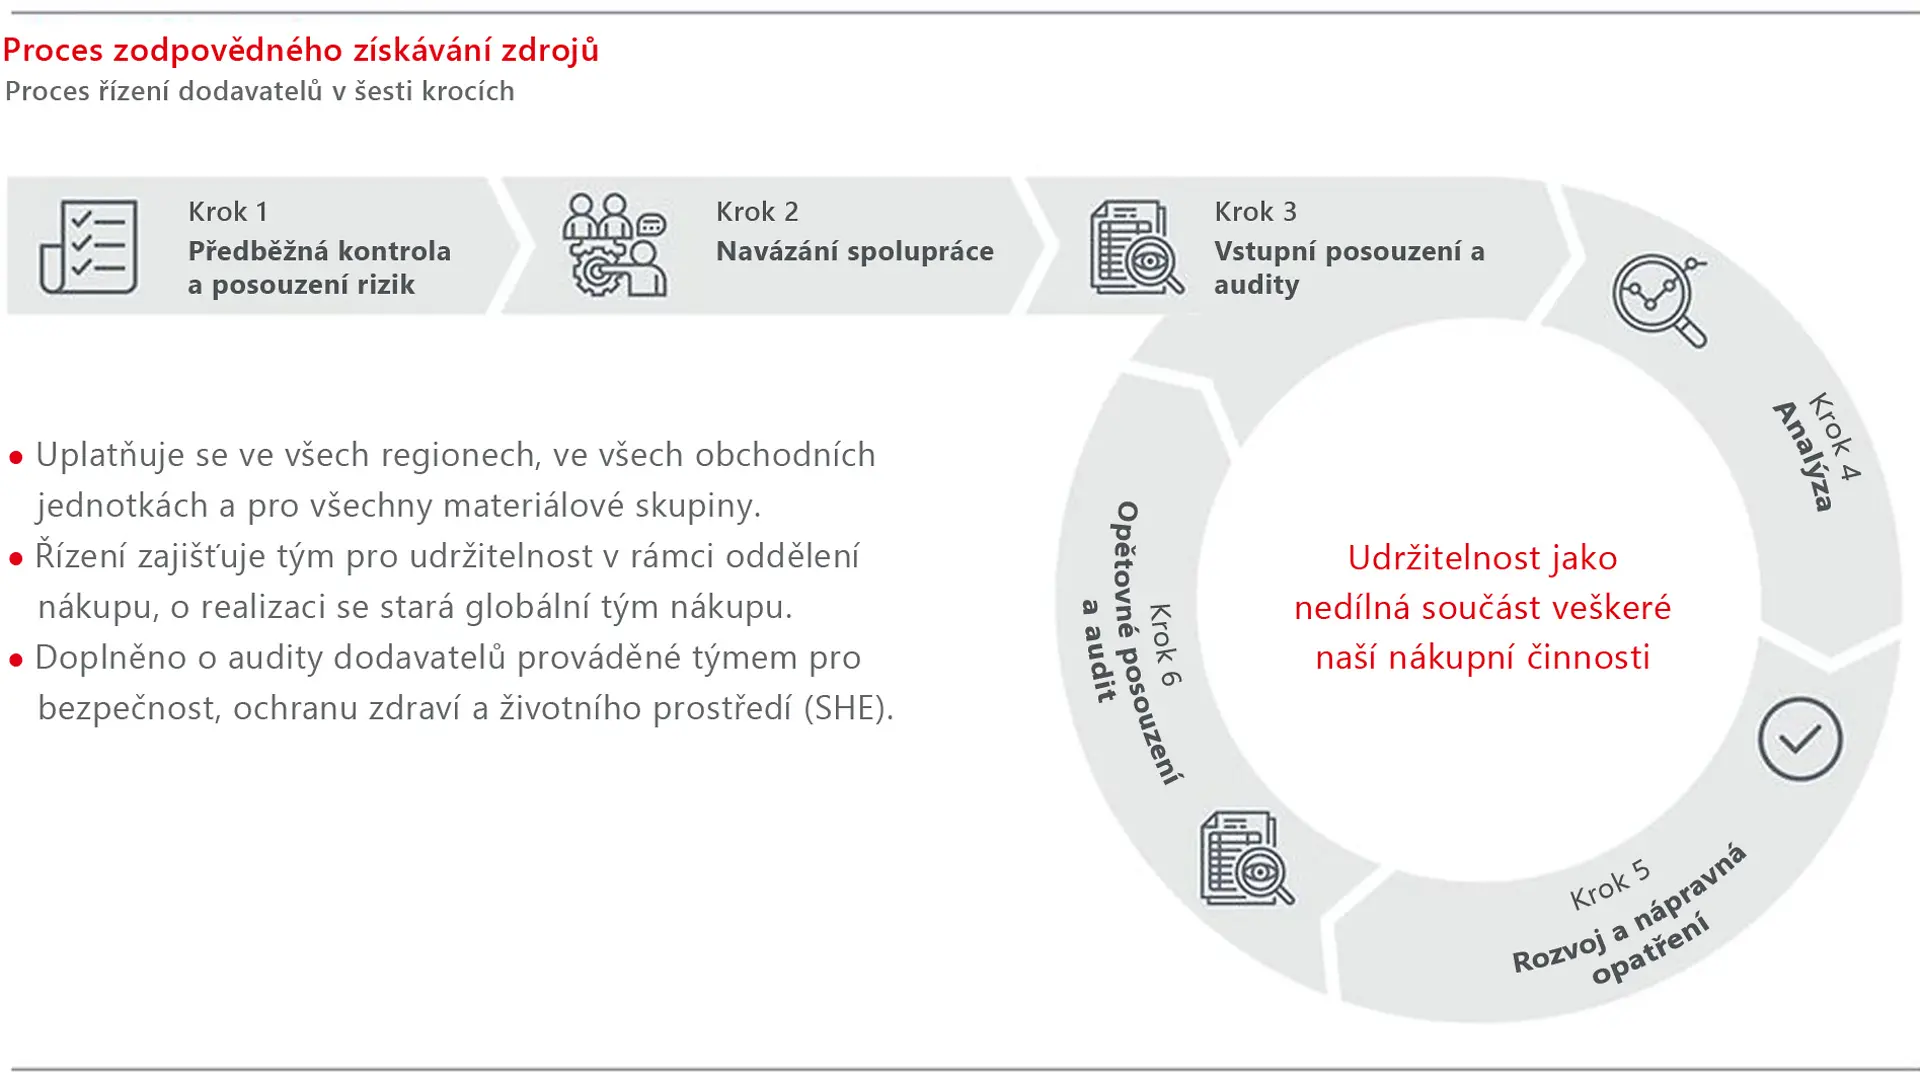 Grafika procesu zodpovědného získávání zdrojů ve společnosti Henkel